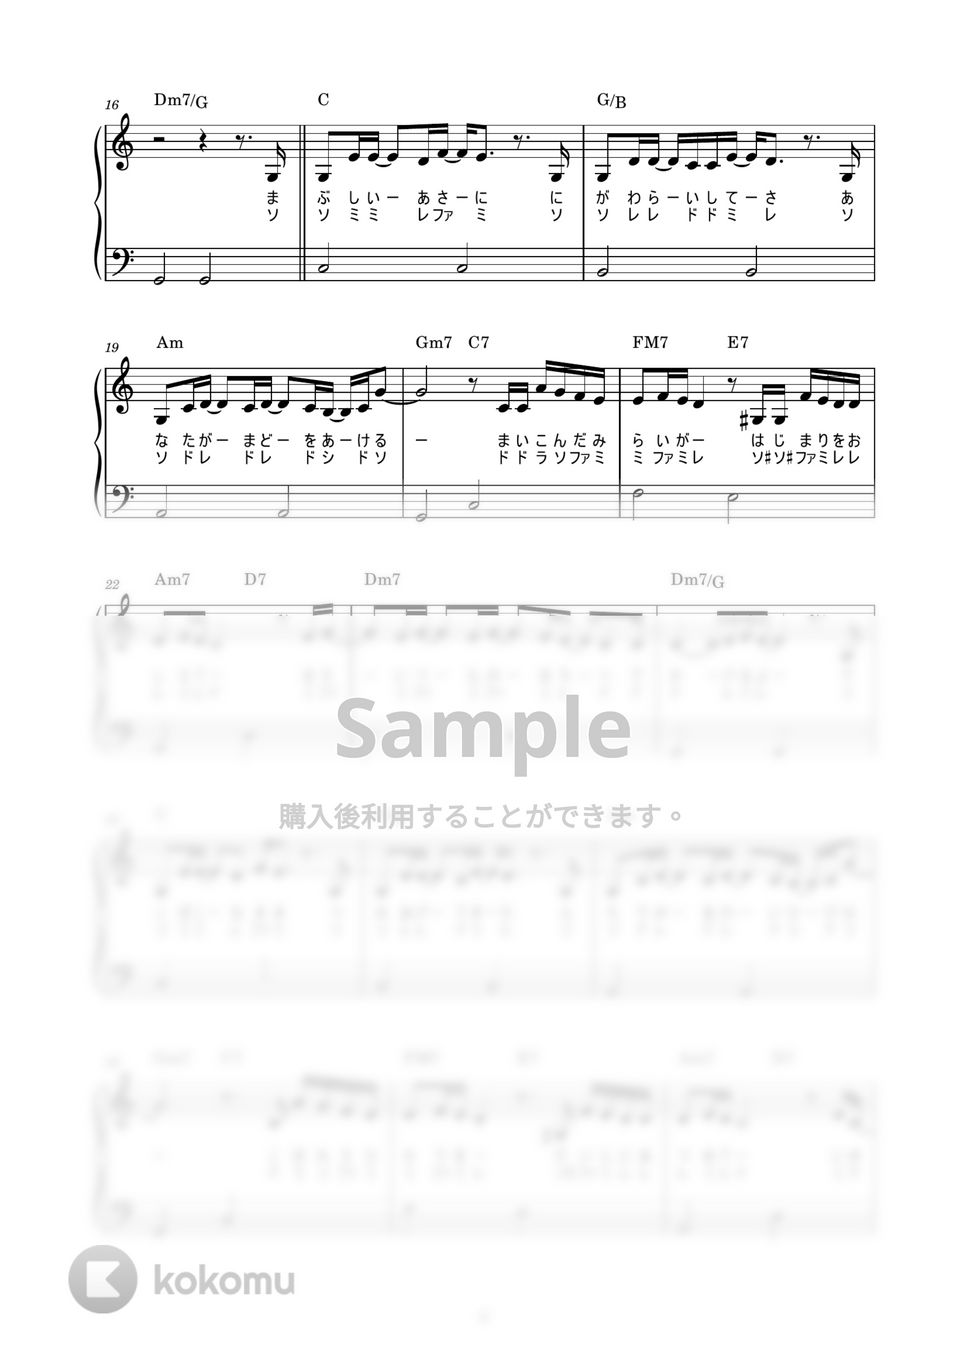 いきものがかり - ありがとう (かんたん / 歌詞付き / ドレミ付き / 初心者) by piano.tokyo